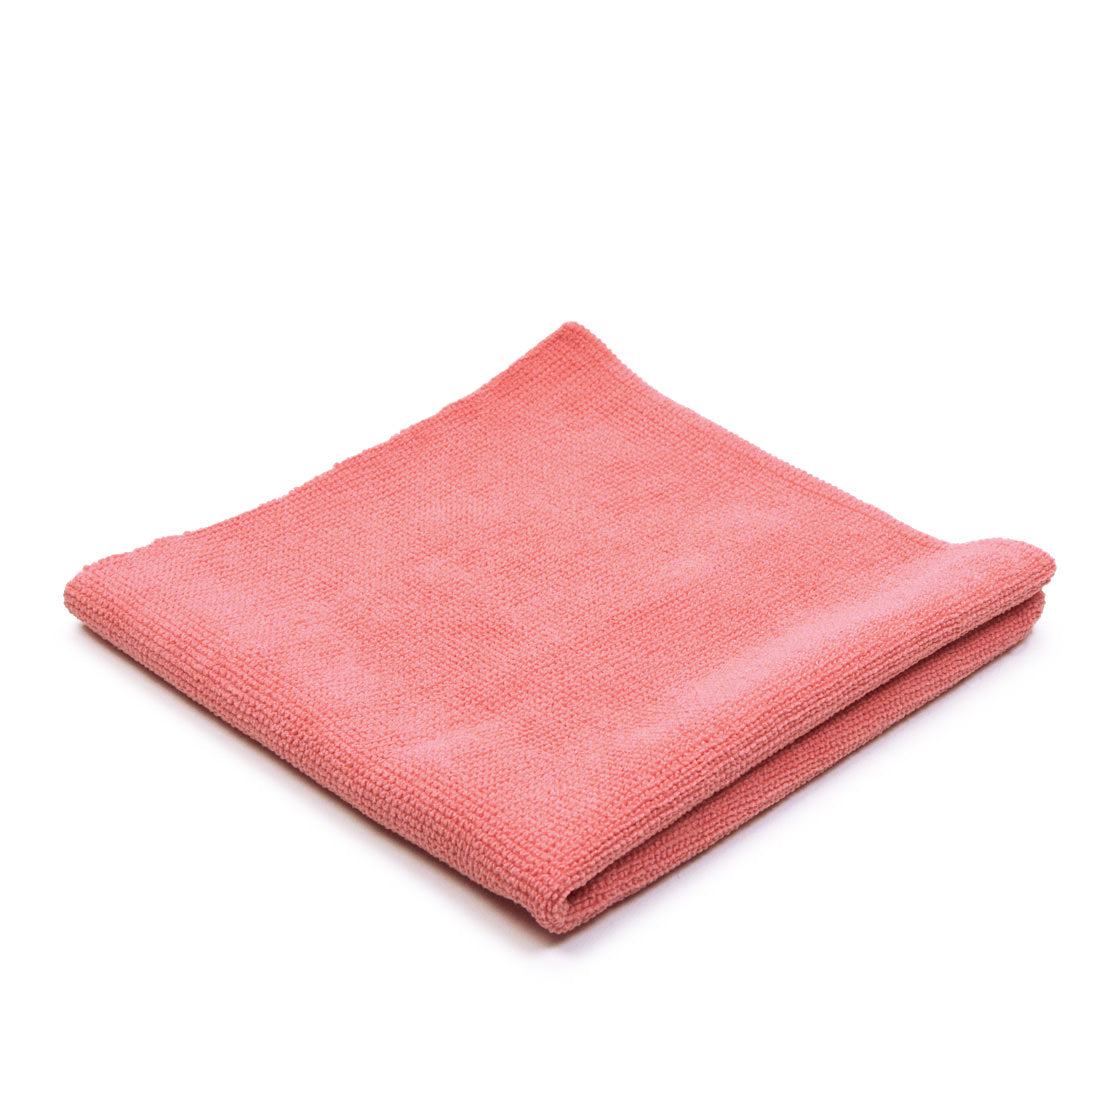 Swissvax Micro-Absorb Towel